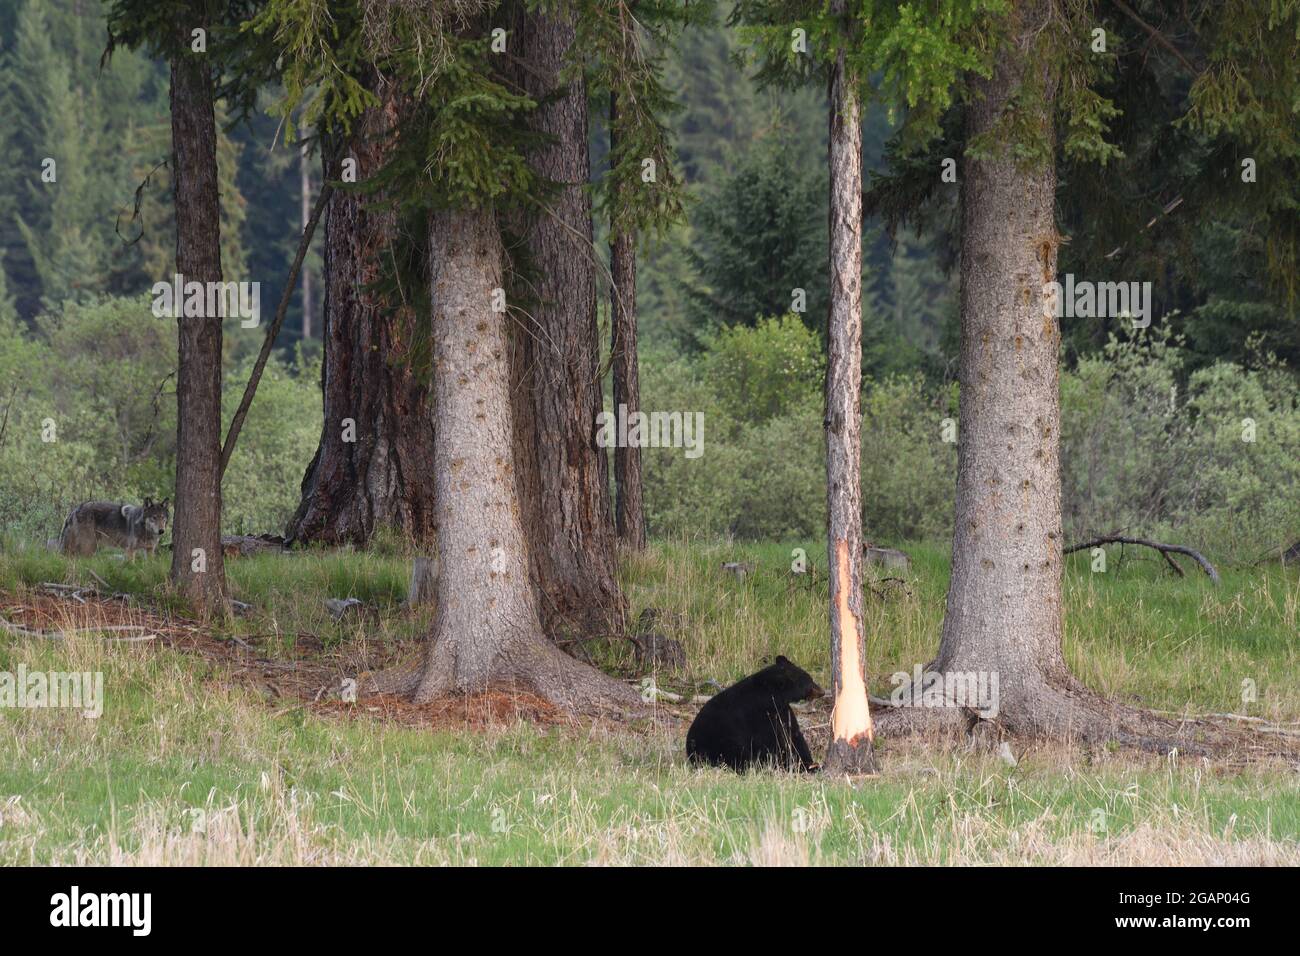 Orso nero che spellano un larice occidentale da nutrire sul canbium, mentre un lupo grigio selvaggio guarda. Yaak Valley, Montana nord-occidentale. (Foto di Randy Beacham) Foto Stock